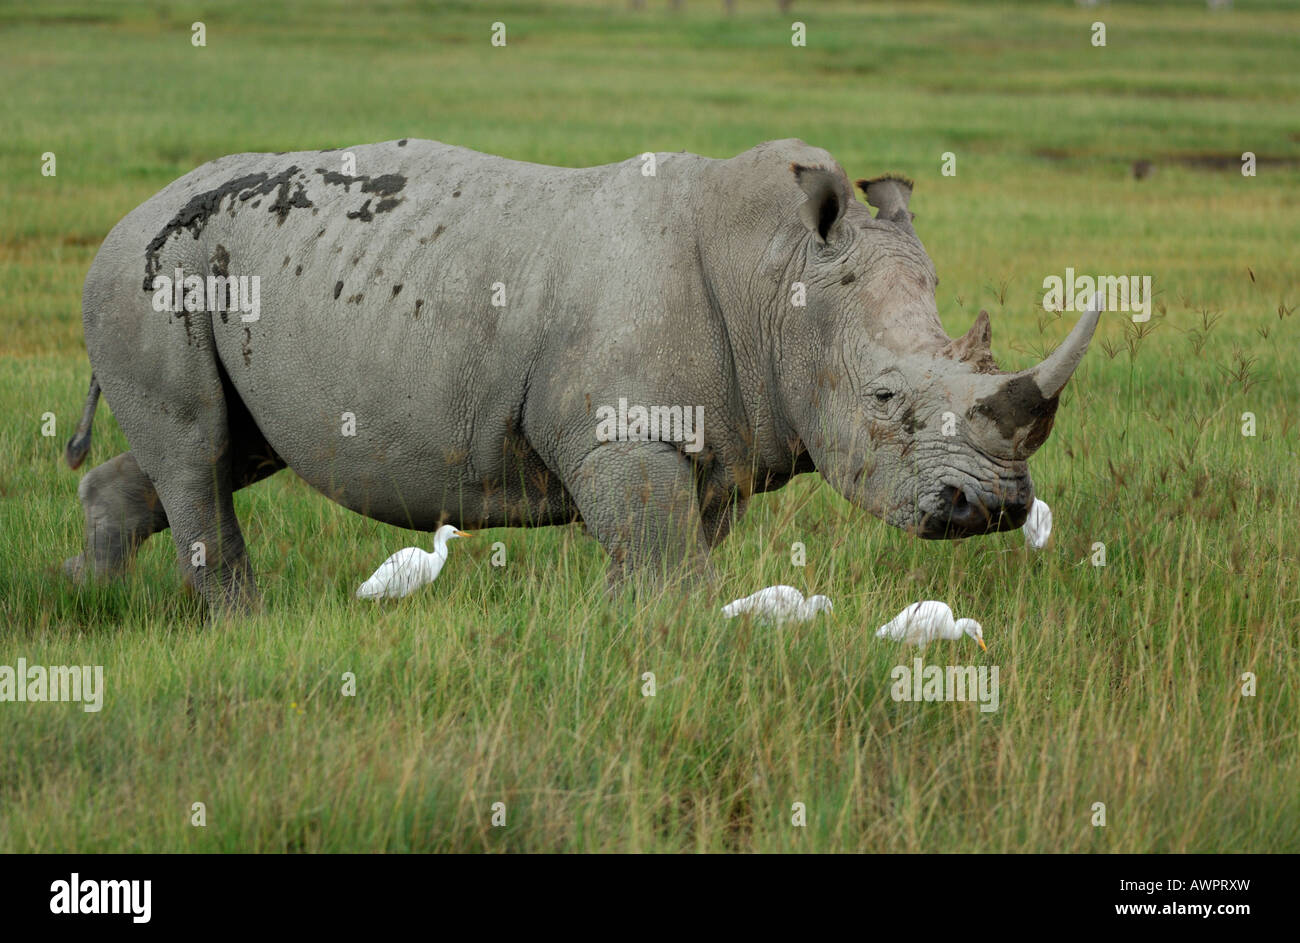 Le Rhinocéros noir (Diceros bicornis) dans son habitat naturel avec des hérons, le lac Nakuru Kenya Afrique Banque D'Images